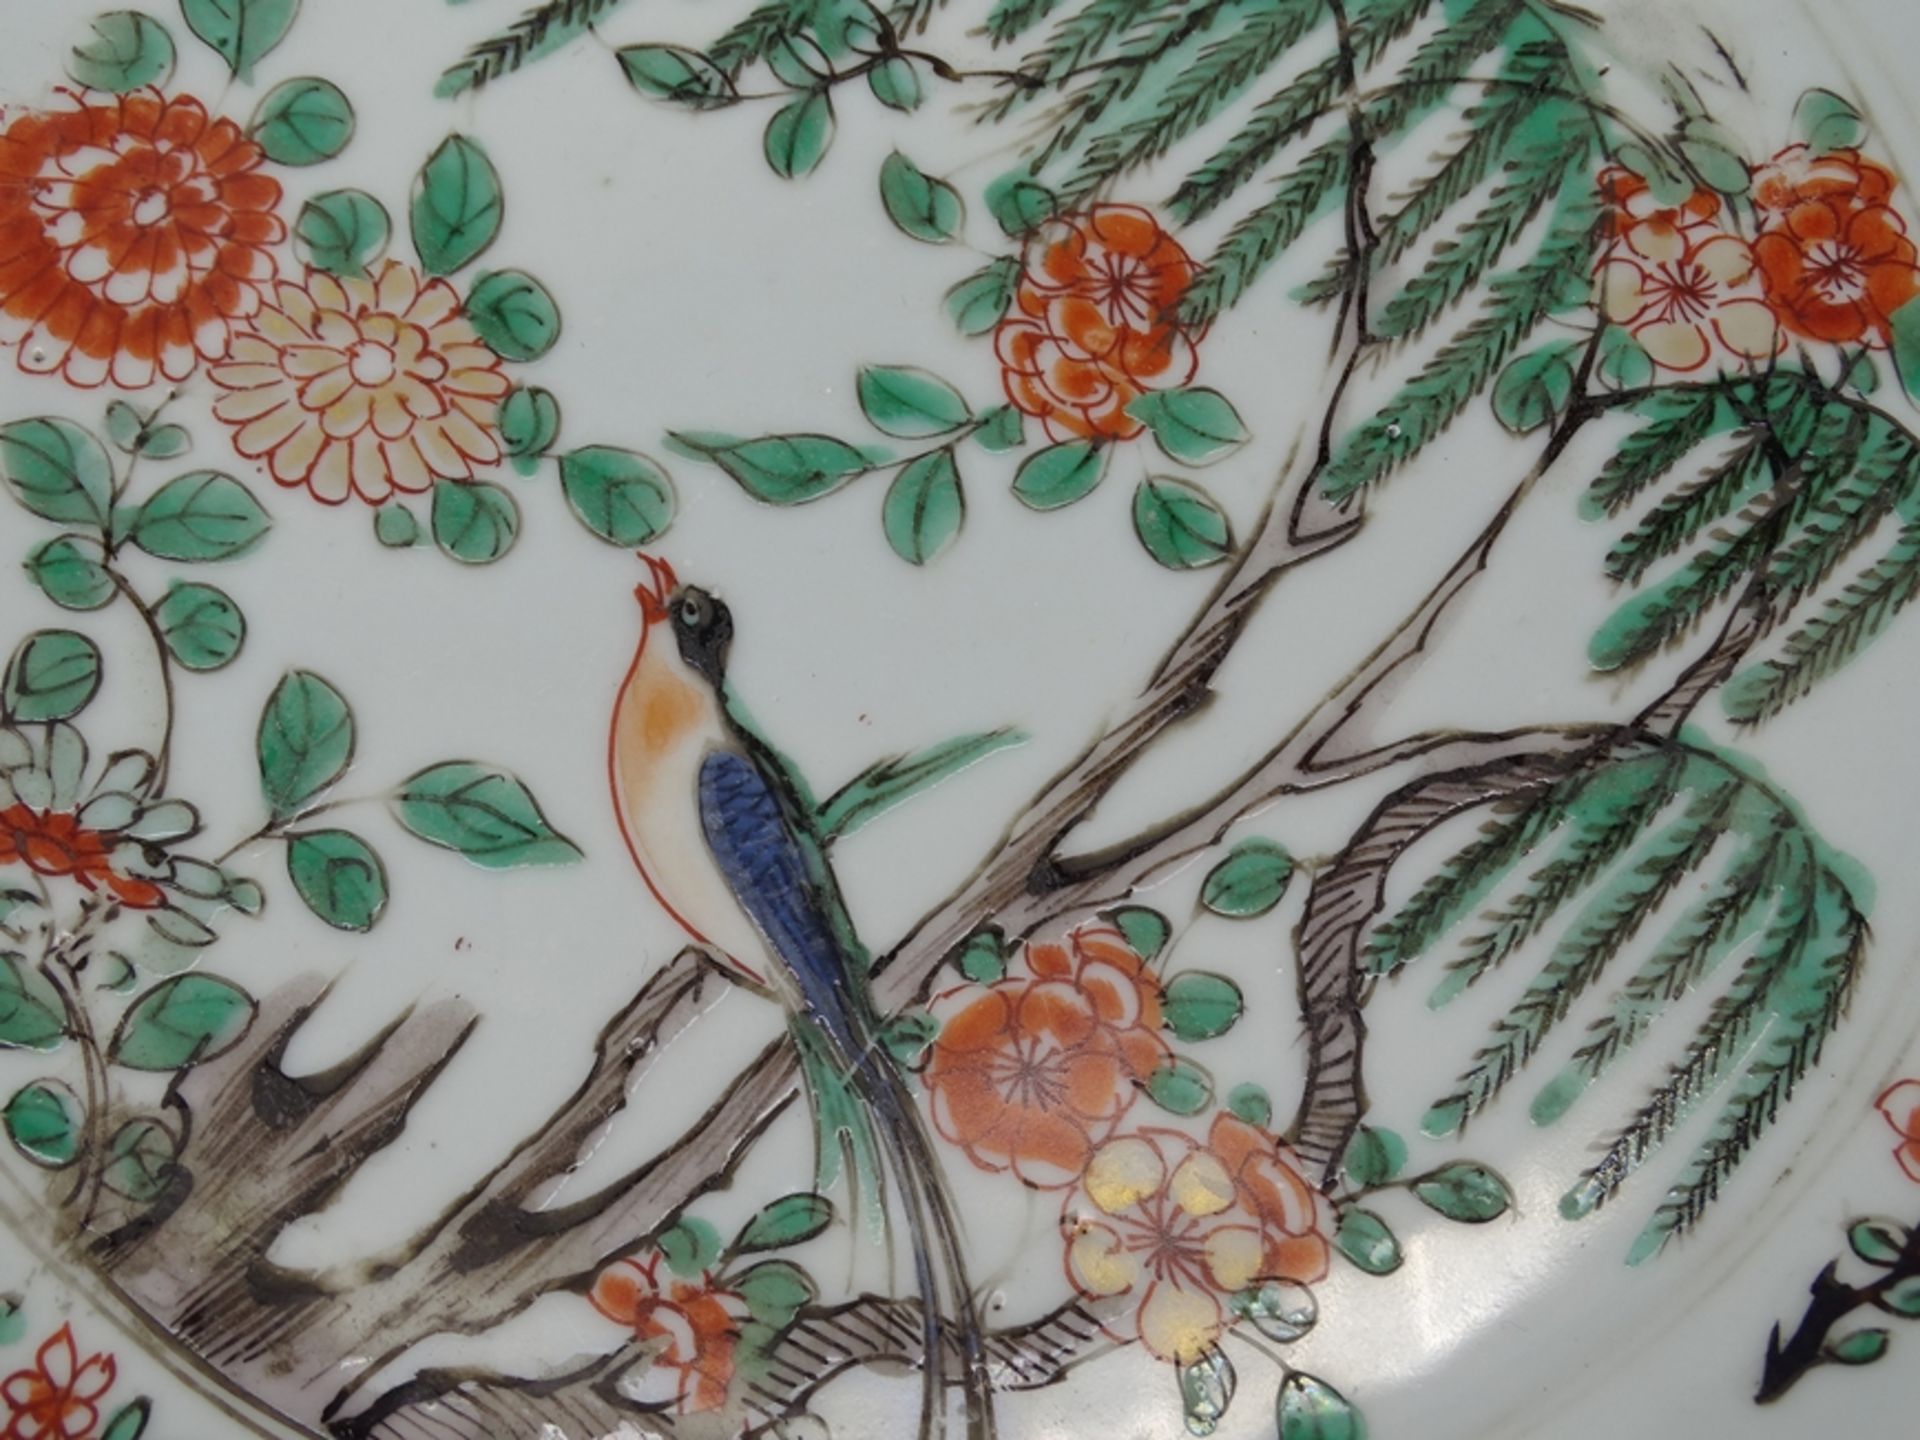 Großer Teller mit Vogel und Blumenmotiven,China, älter, D. 24cm, geklebte Stellen - Bild 11 aus 11